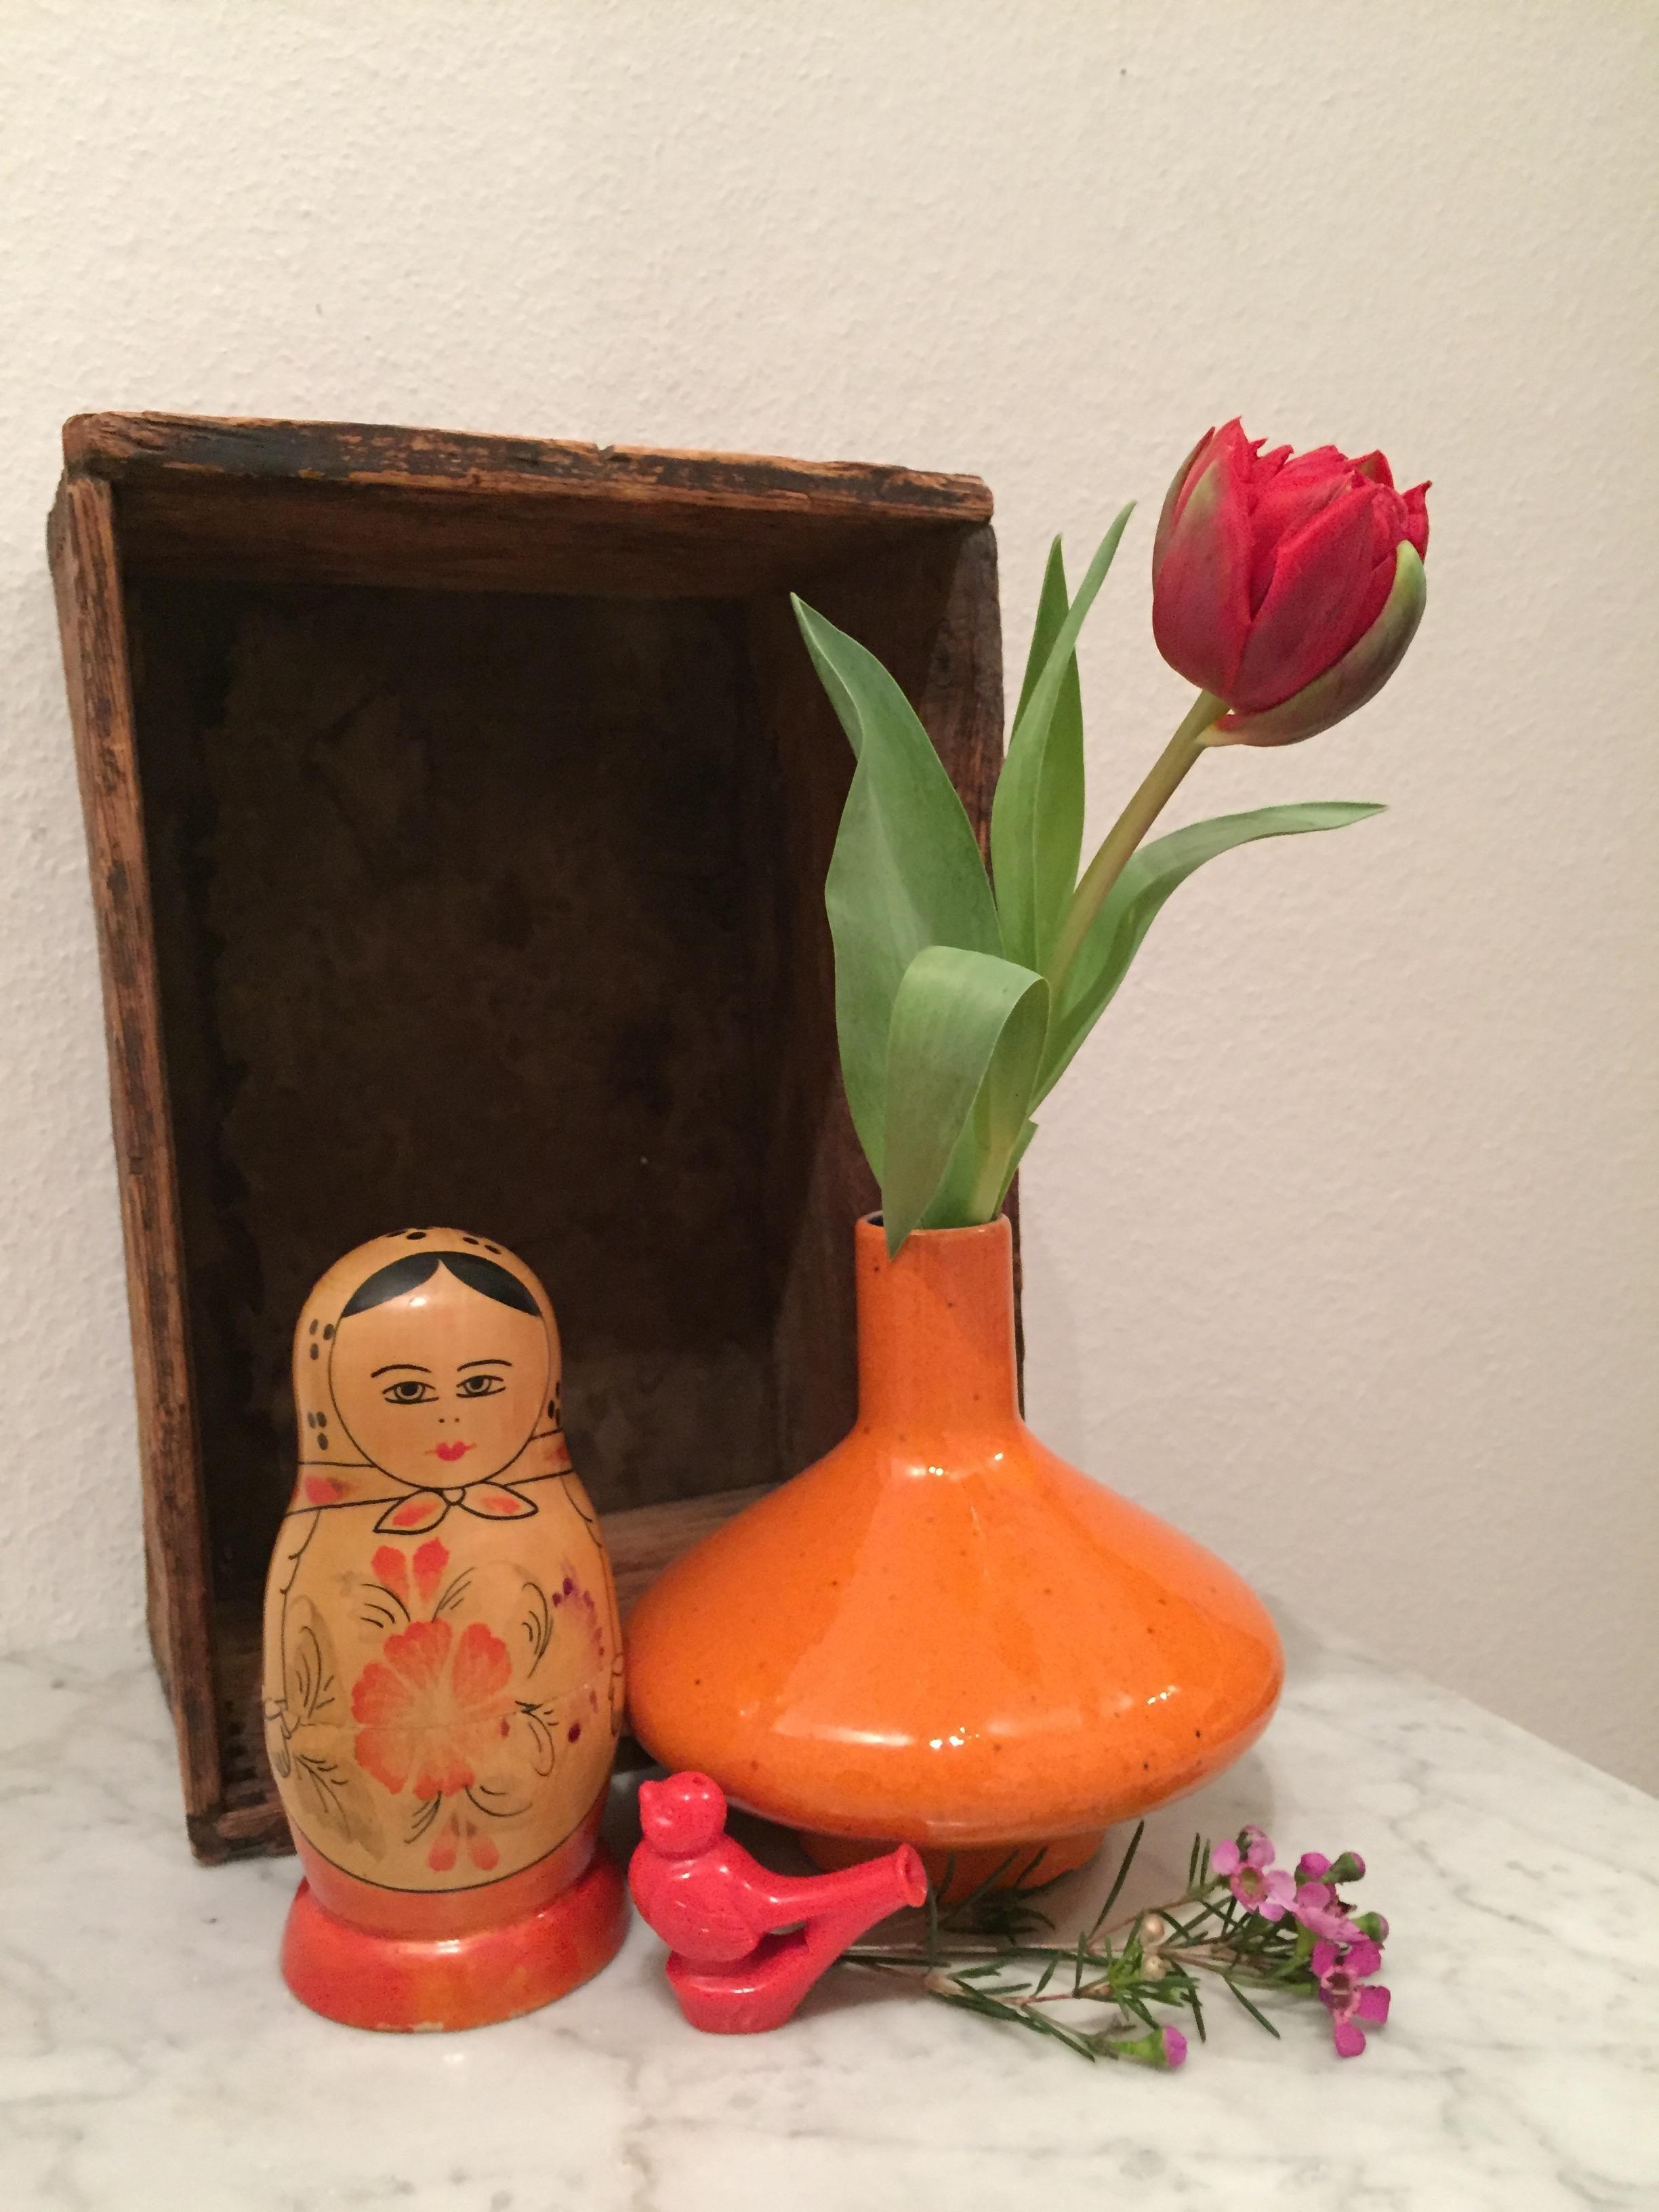 Kommt rein. Diese schöne Tulpe begrüßt dich gleich am Eingang ♥️
#hellospring #tulpe #rot #flohmarkt